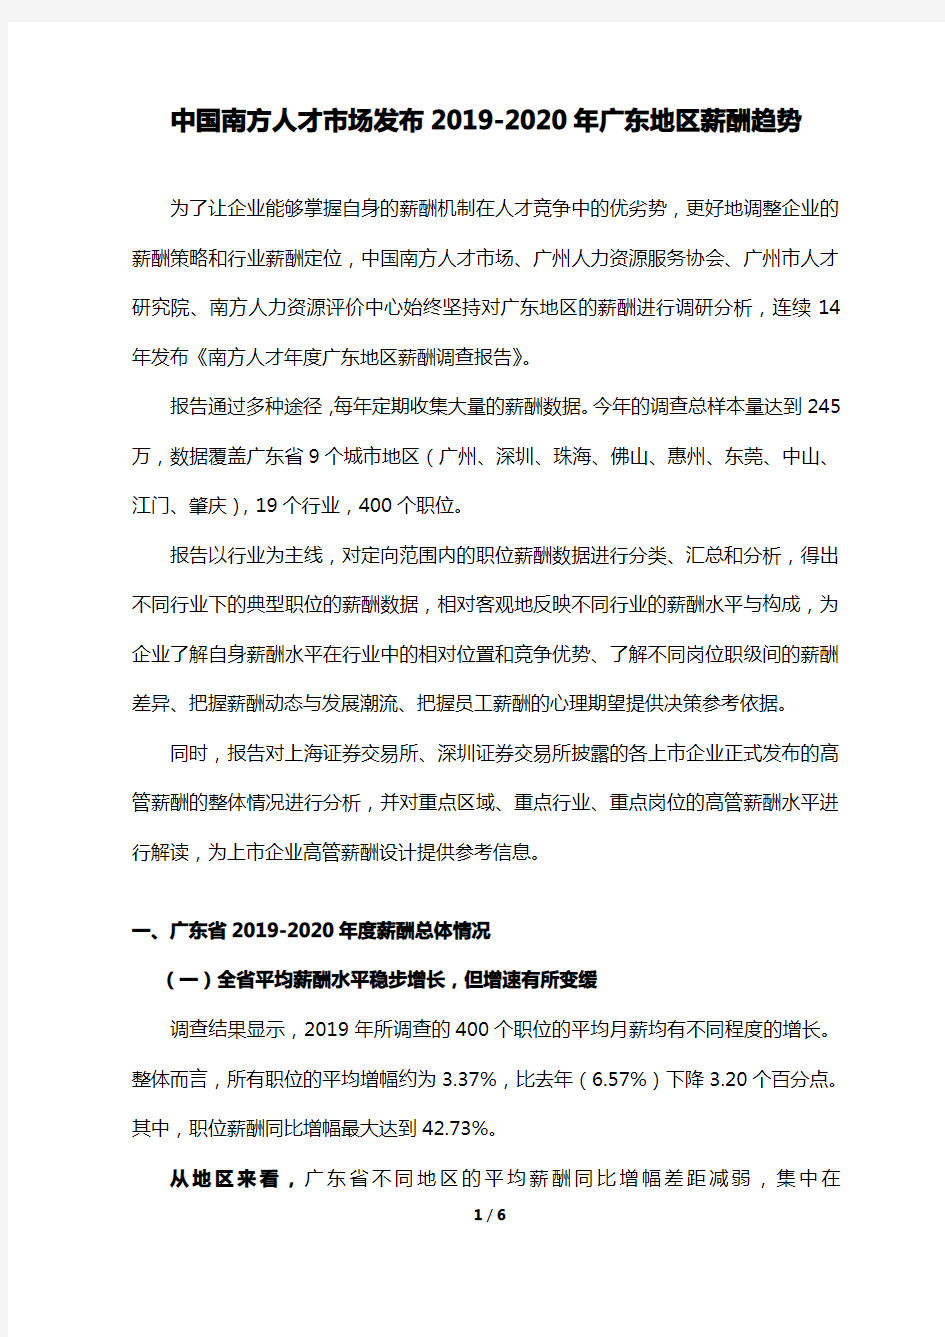 南方人才市场《2019-2020年度广东地区薪酬调查报告》